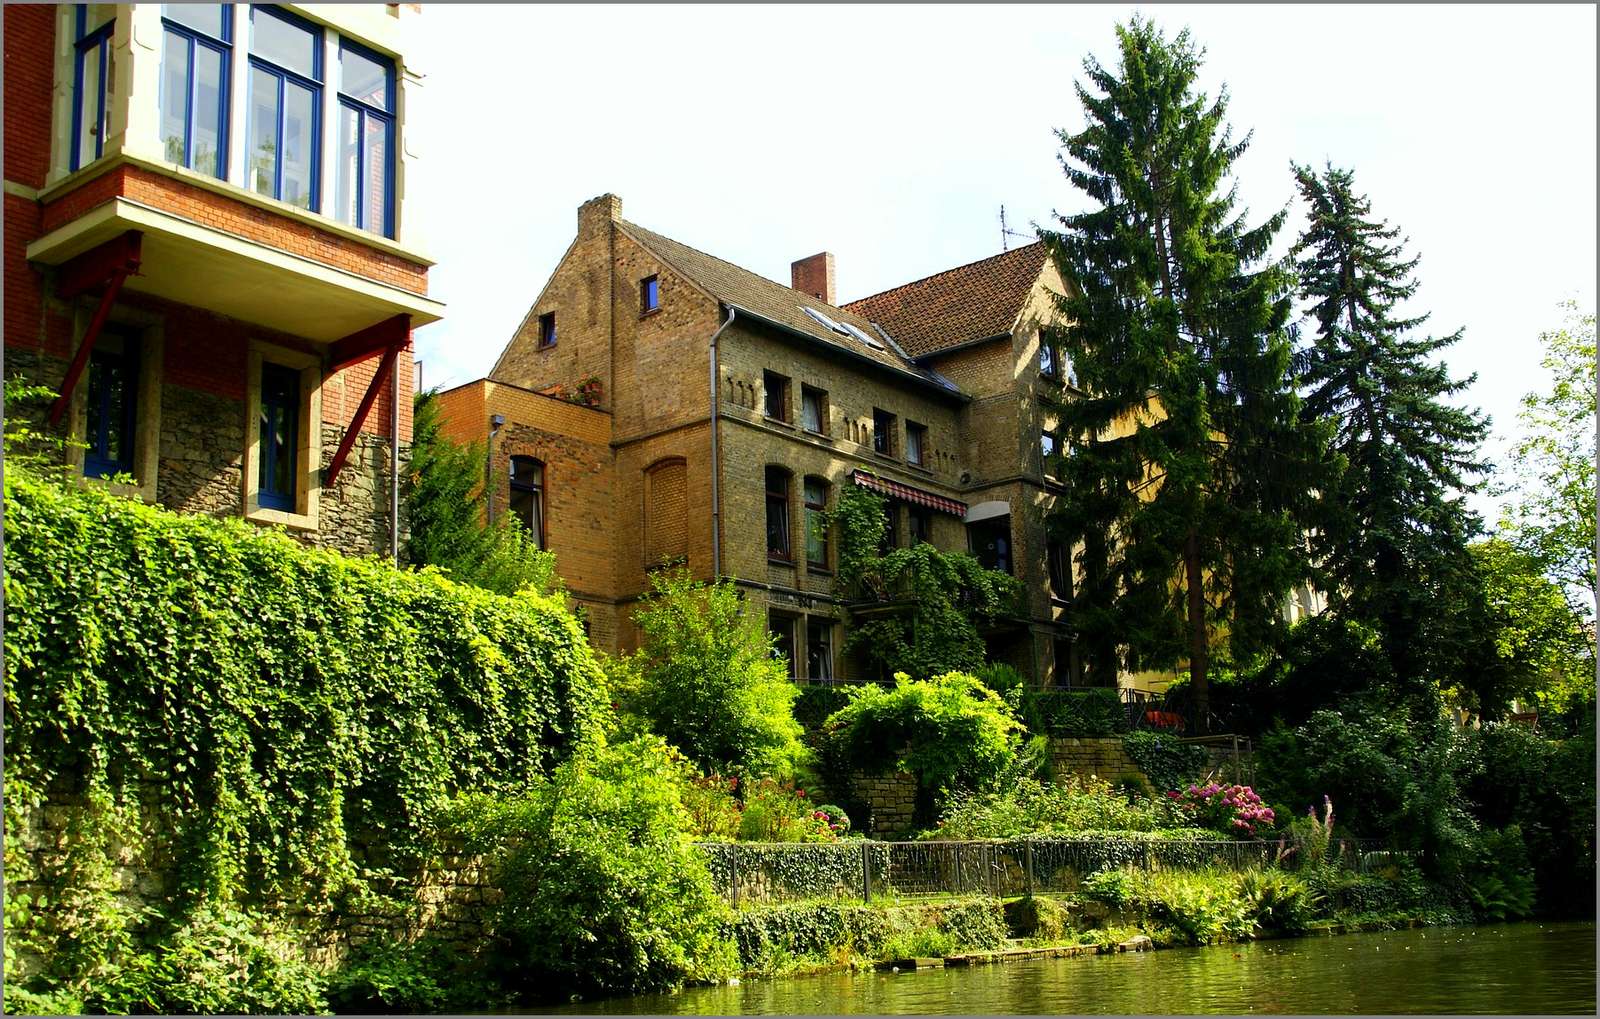 Wunderschöne Villen am Fluss, umgeben von viel Grün (Brunswick) Puzzlespiel online